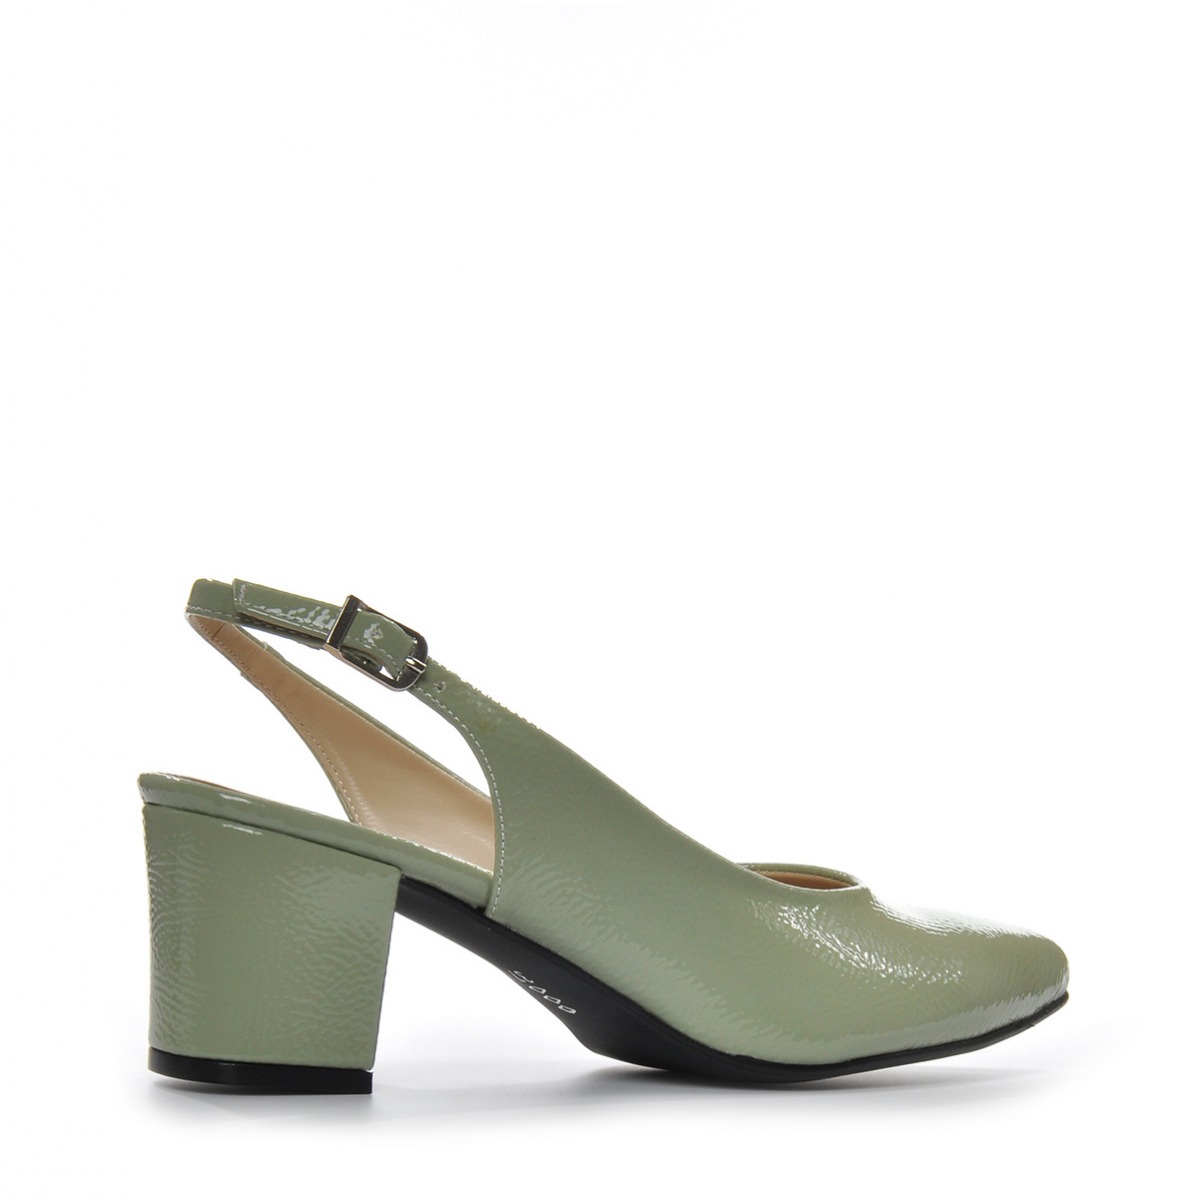 Flo Kadın  Yeşil Klasik Topuklu Ayakkabı VZN-233Y. 4